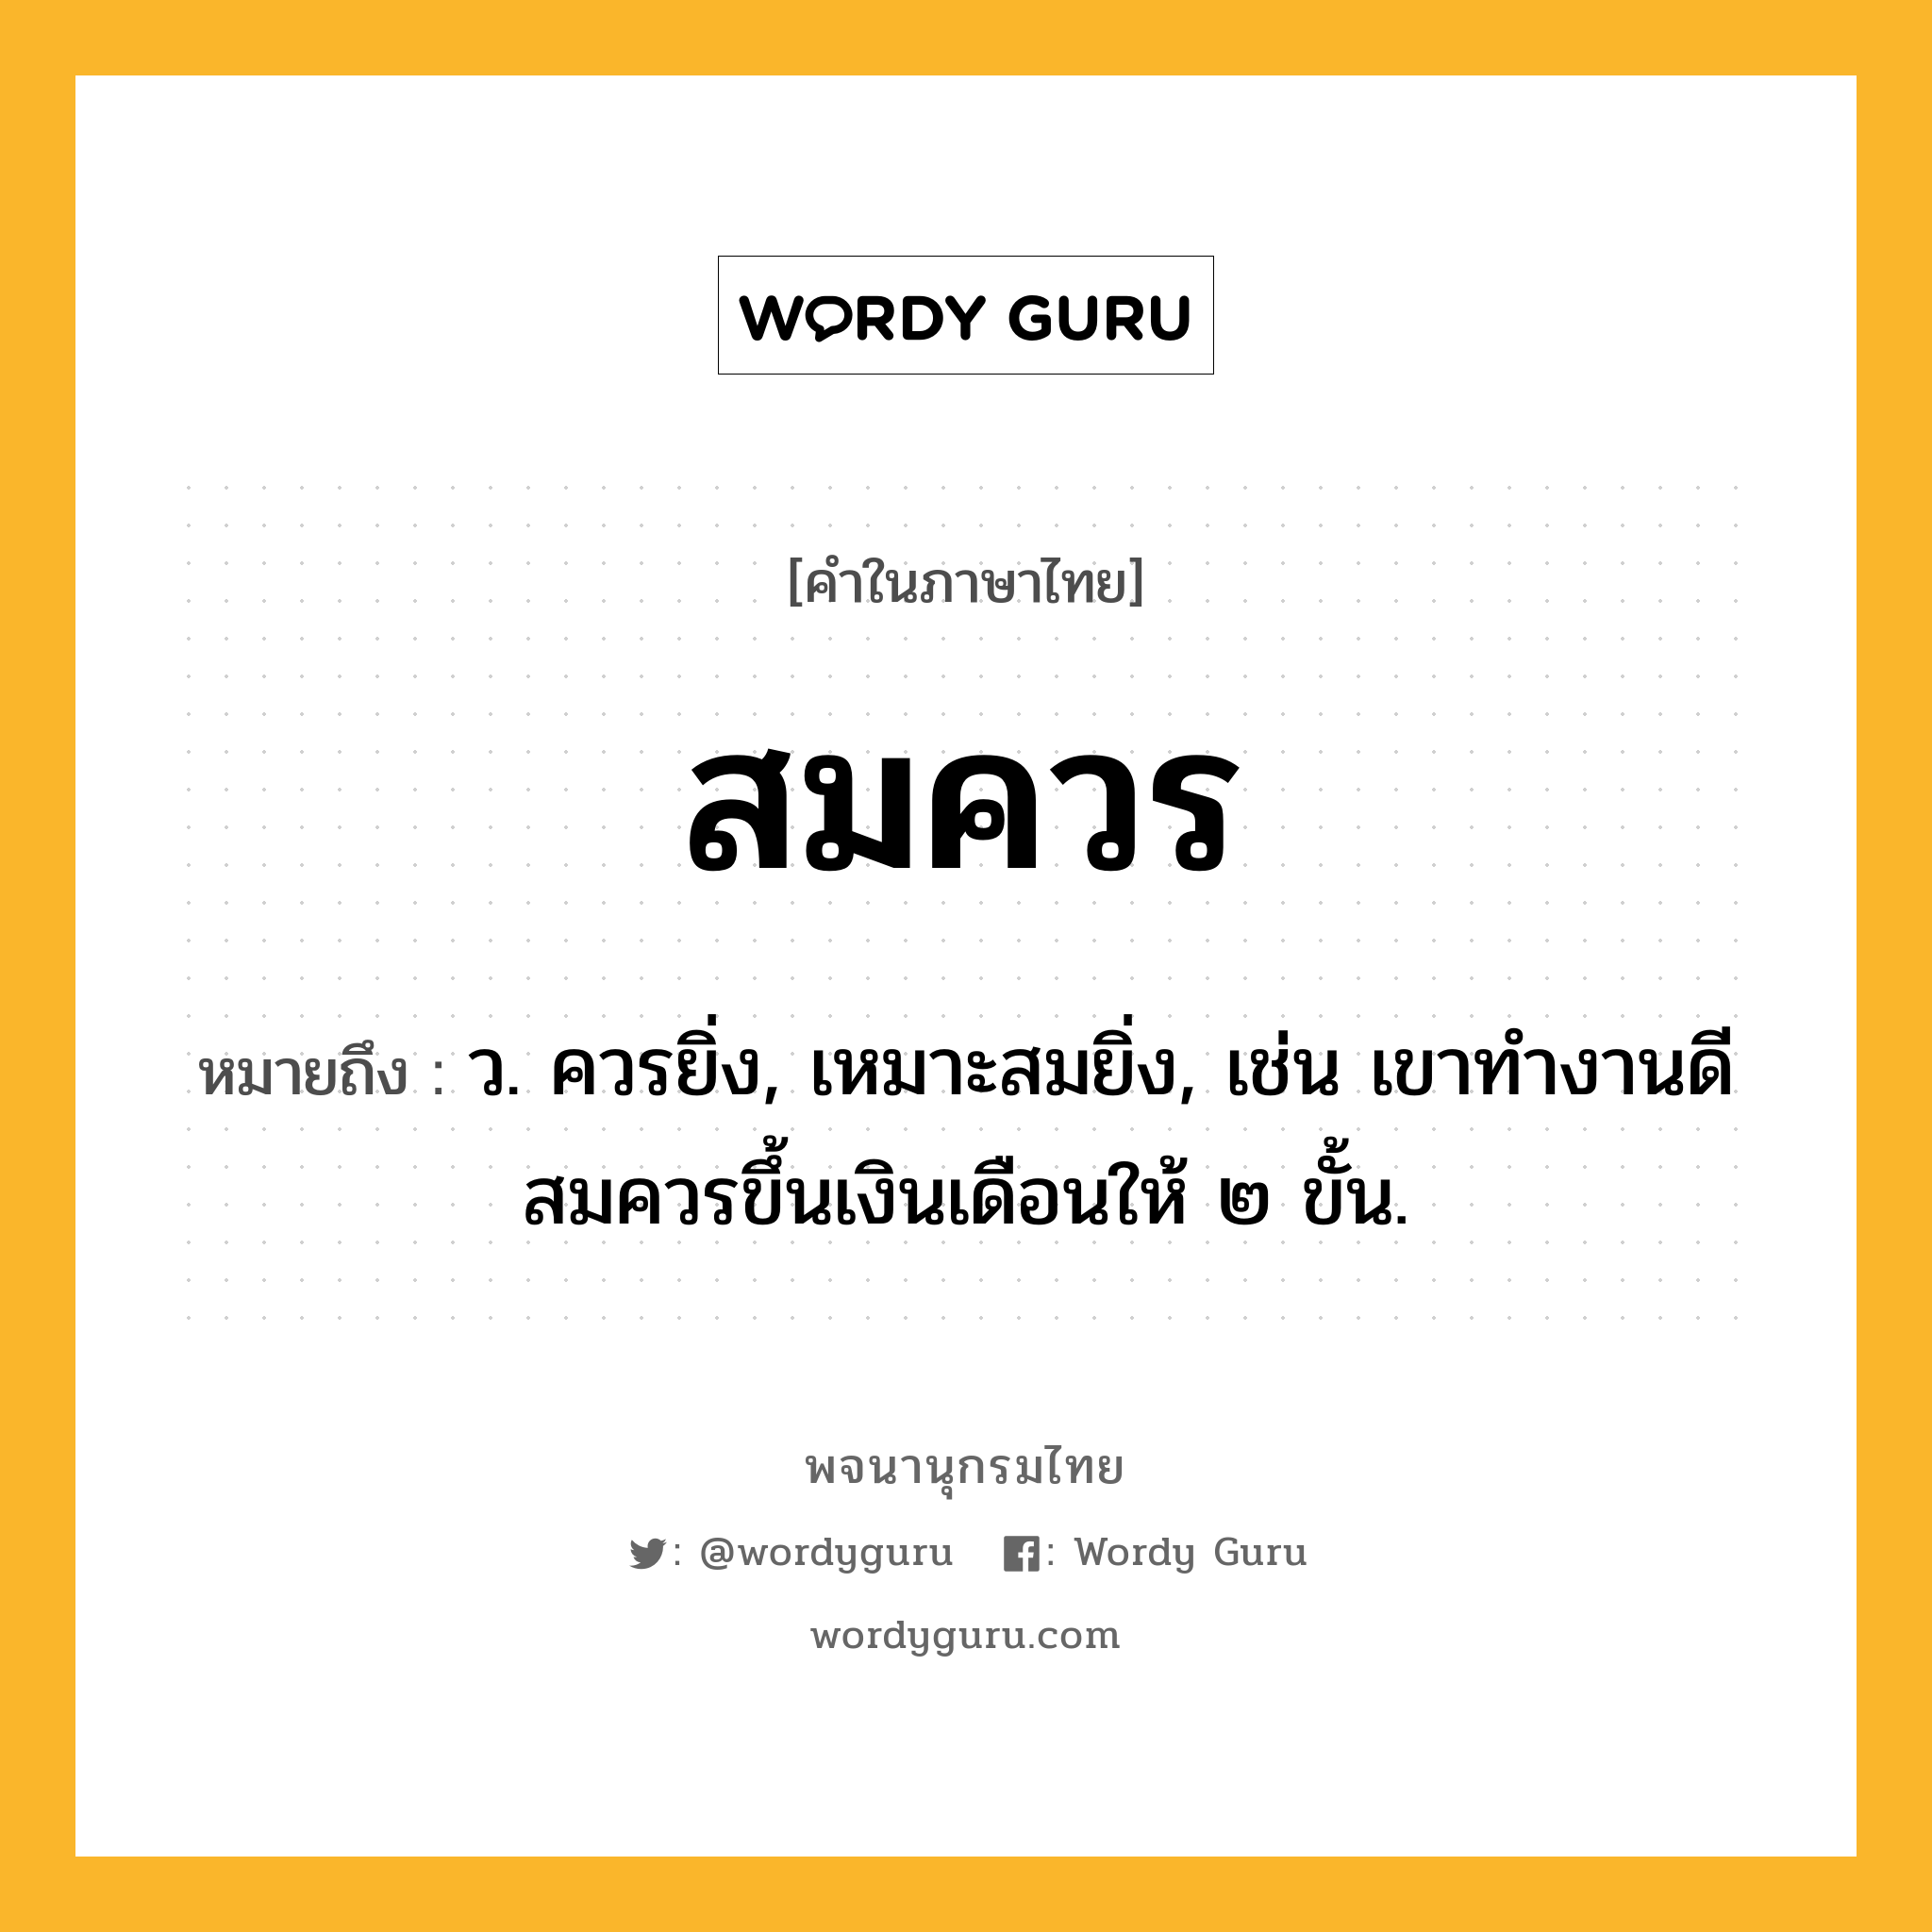 สมควร หมายถึงอะไร?, คำในภาษาไทย สมควร หมายถึง ว. ควรยิ่ง, เหมาะสมยิ่ง, เช่น เขาทำงานดีสมควรขึ้นเงินเดือนให้ ๒ ขั้น.